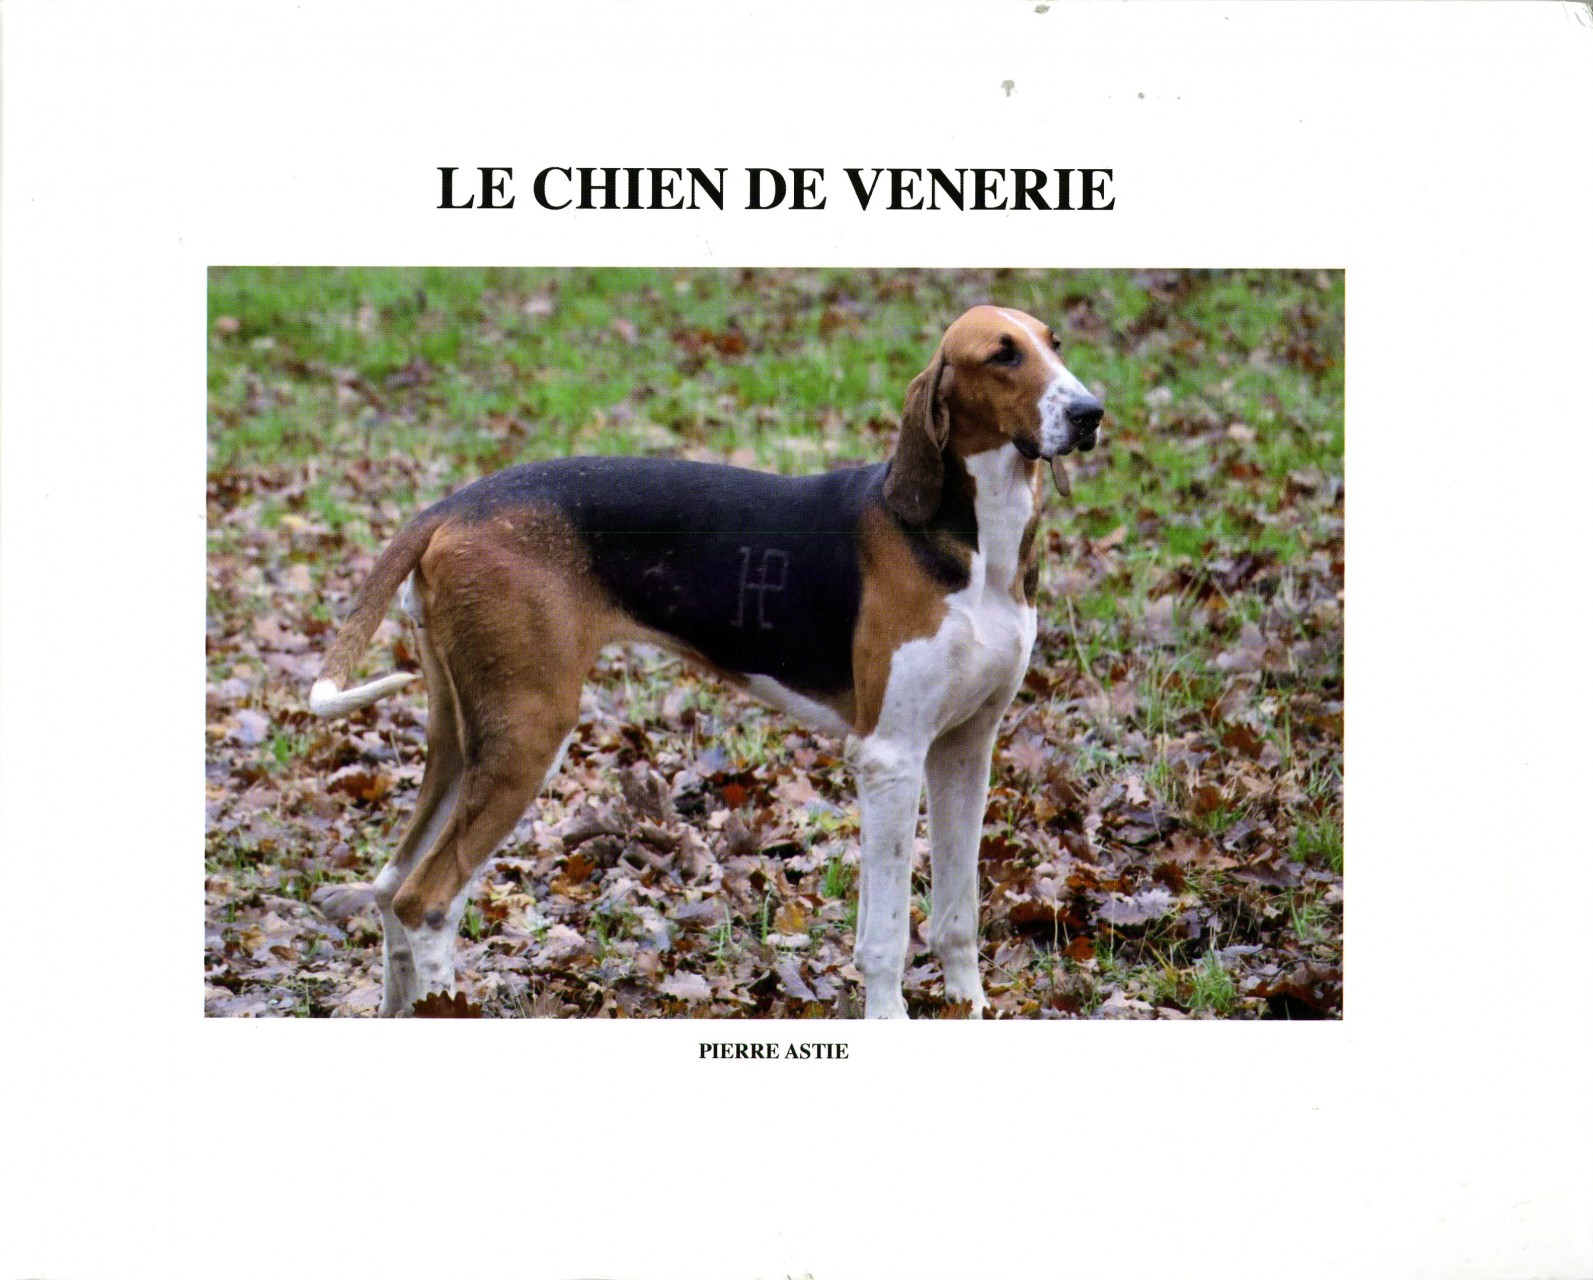 Première couverture livre "Le chien de venerie" avec un chien de vènerie marqué de l'initiale de son équipage